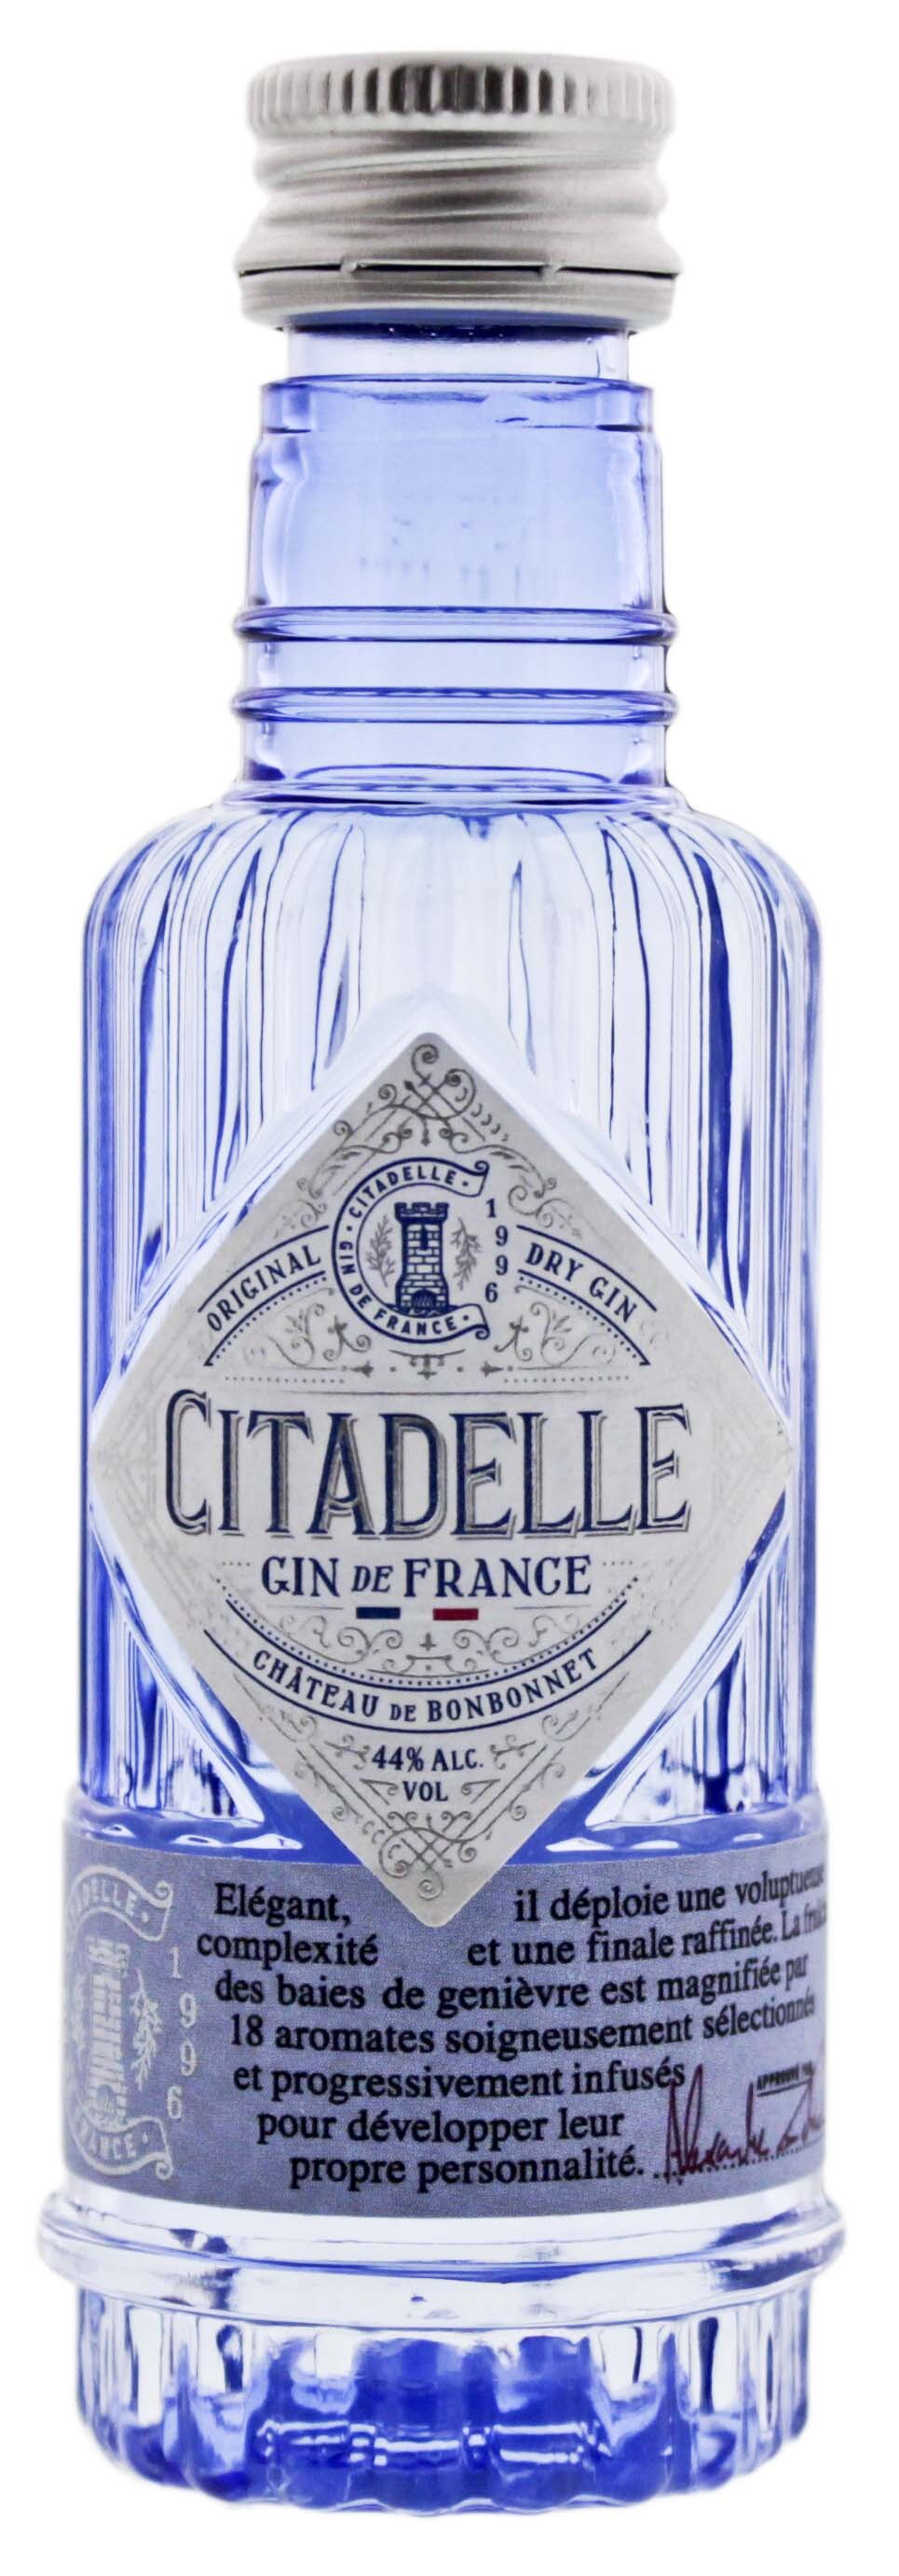 Citadelle Gin Miniatur kaufen! Gin Online Shop - Spirituosen günstig